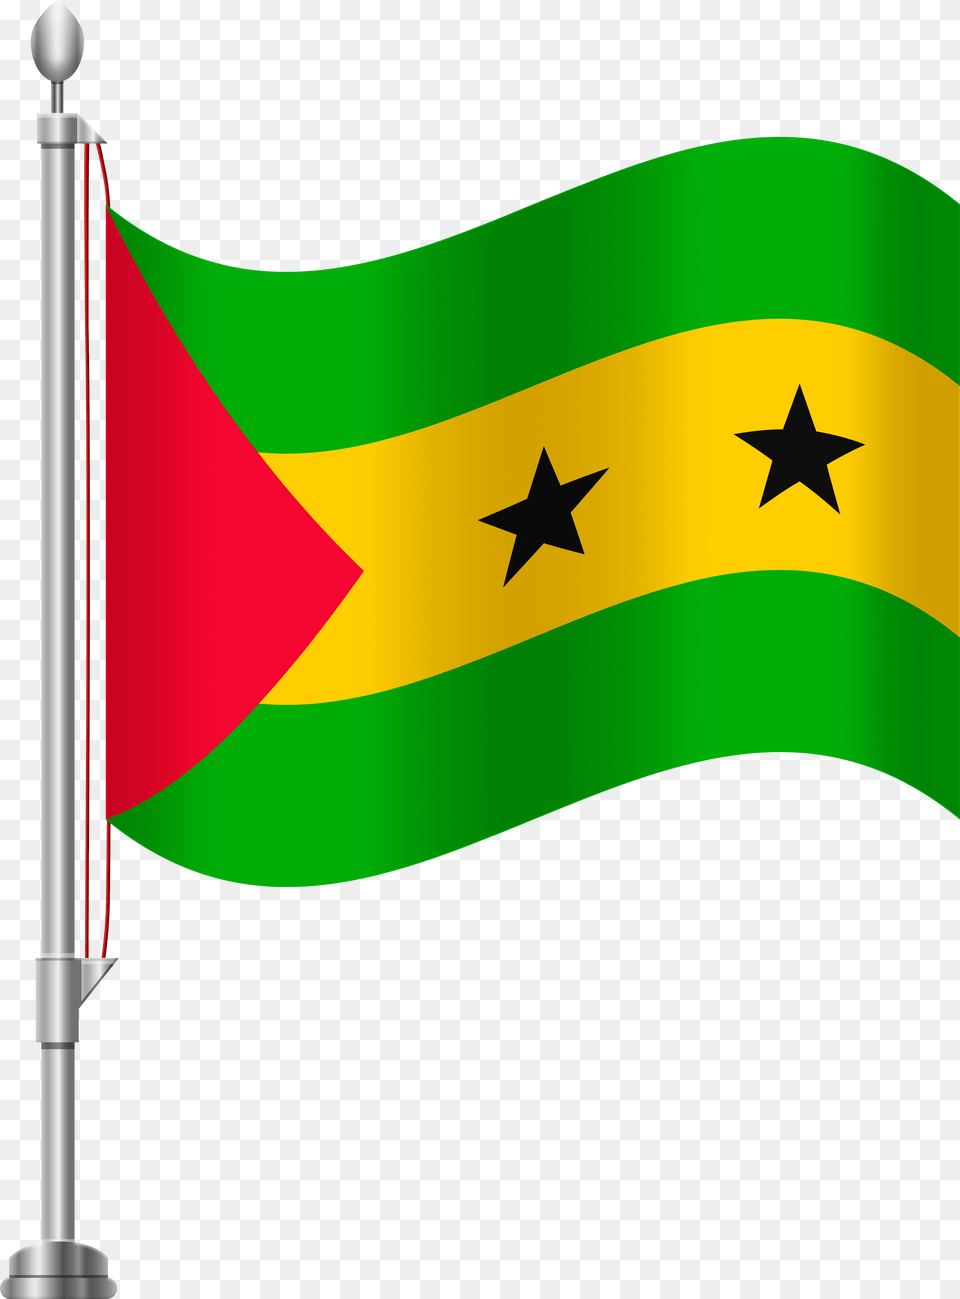 Sao Tome And Principe Flag Clip Art Png Image